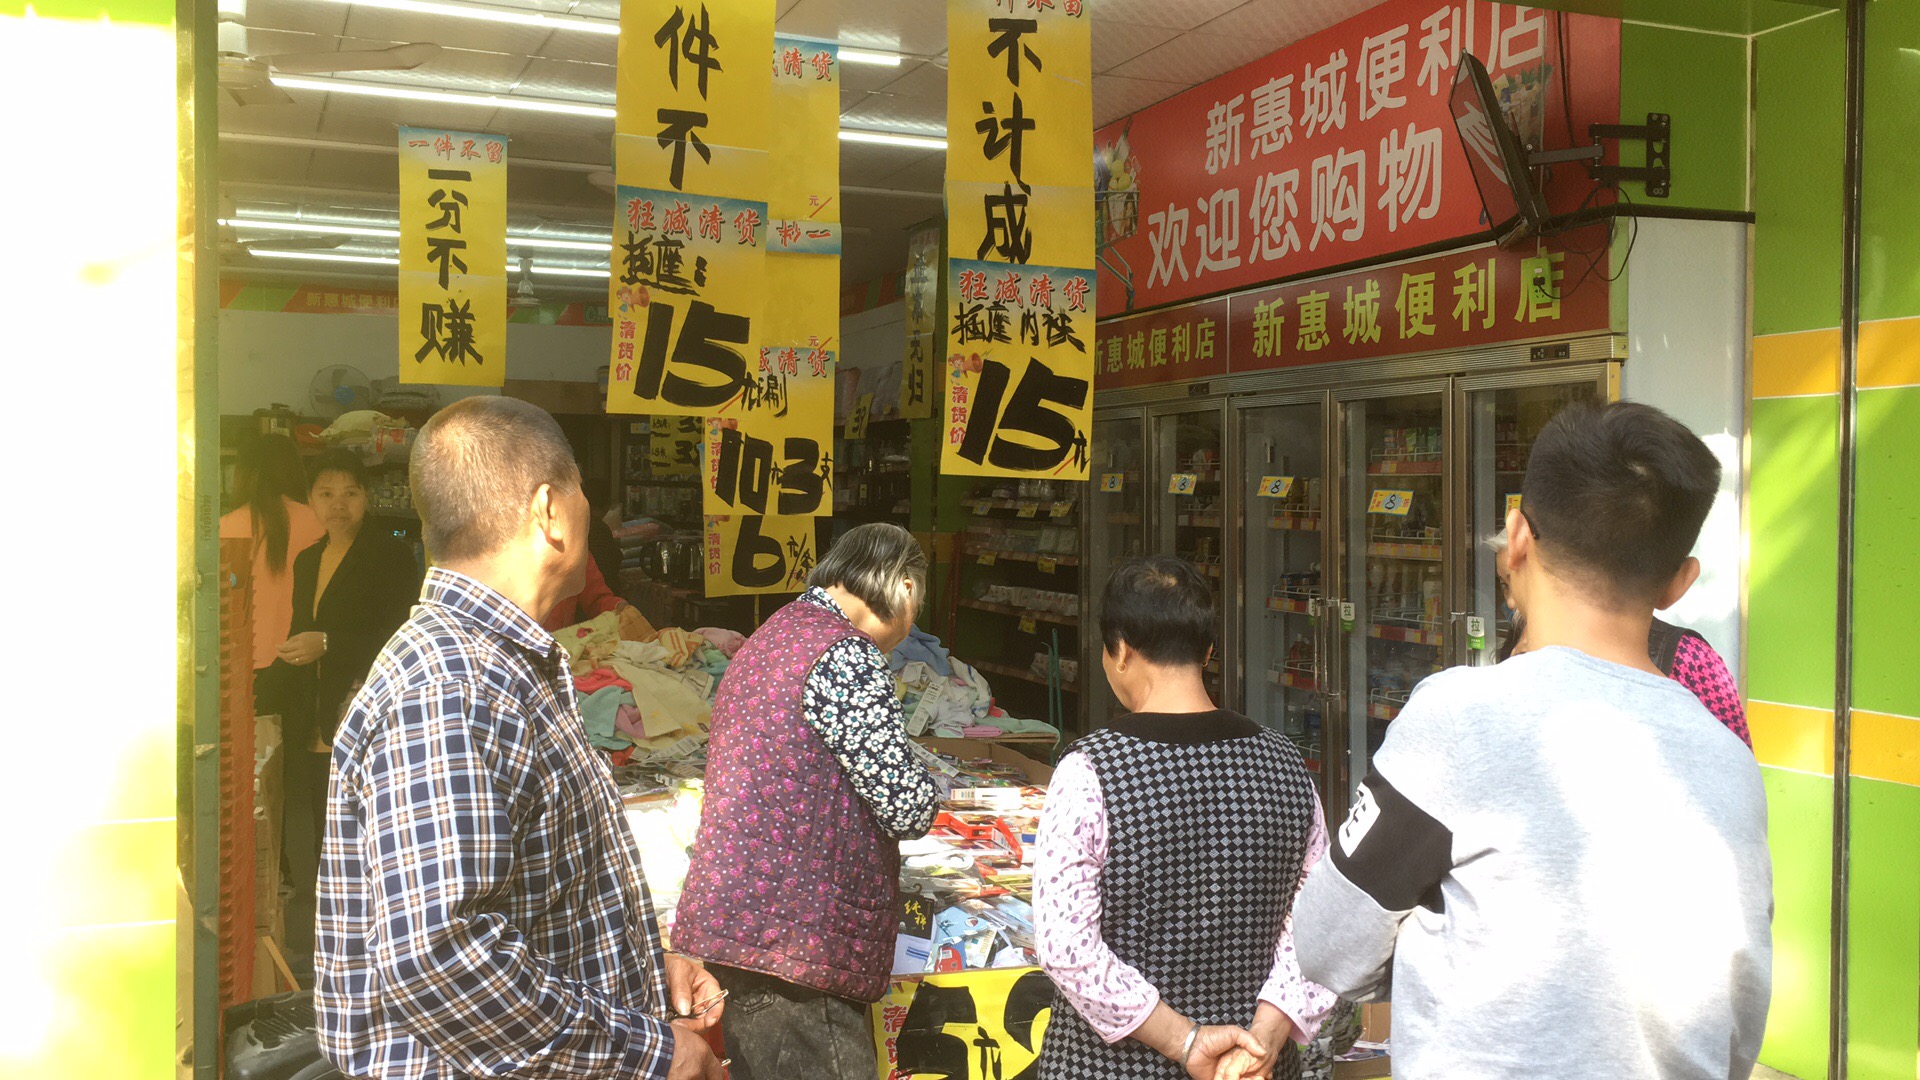 广州市承接超市商场清货项目厂家承接超市商场清货项目 公司 库存 清仓